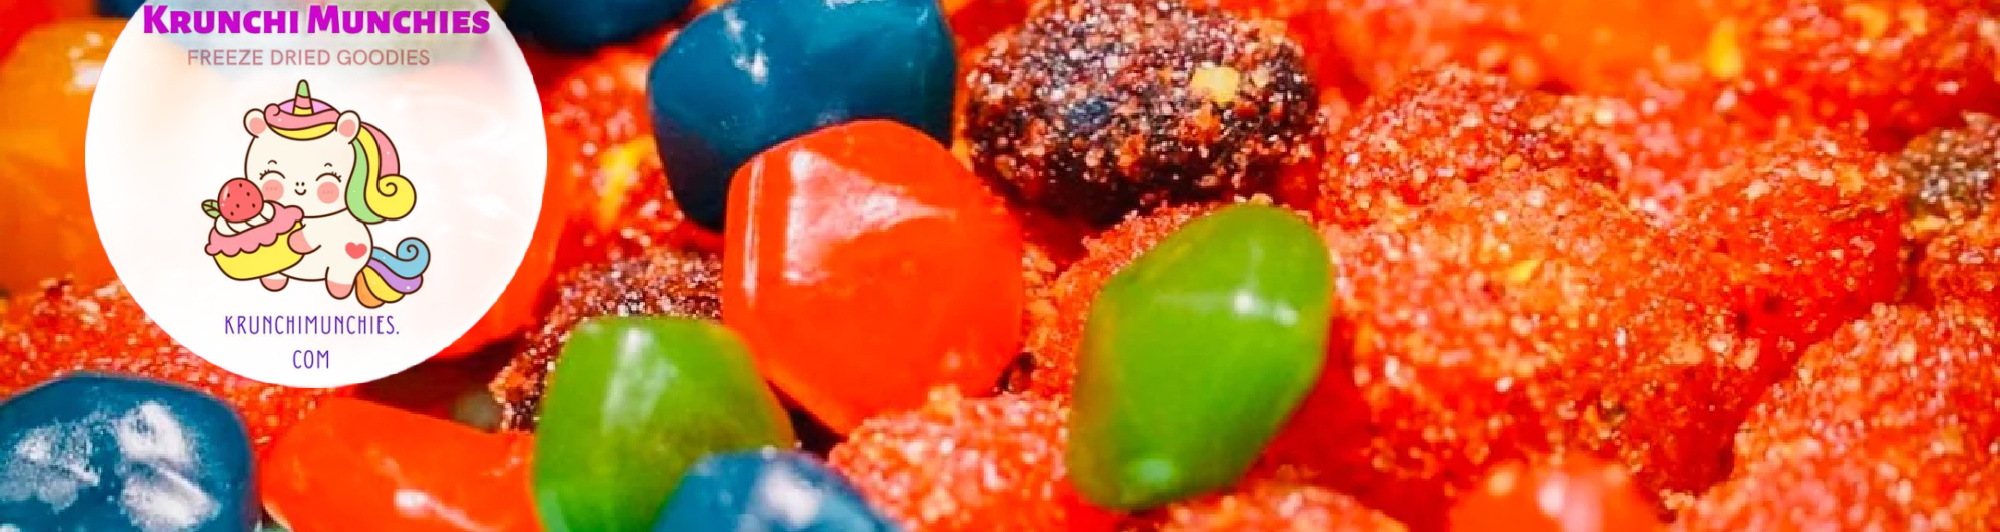 image of krunchi munchies freeze dried fruit candy gusher